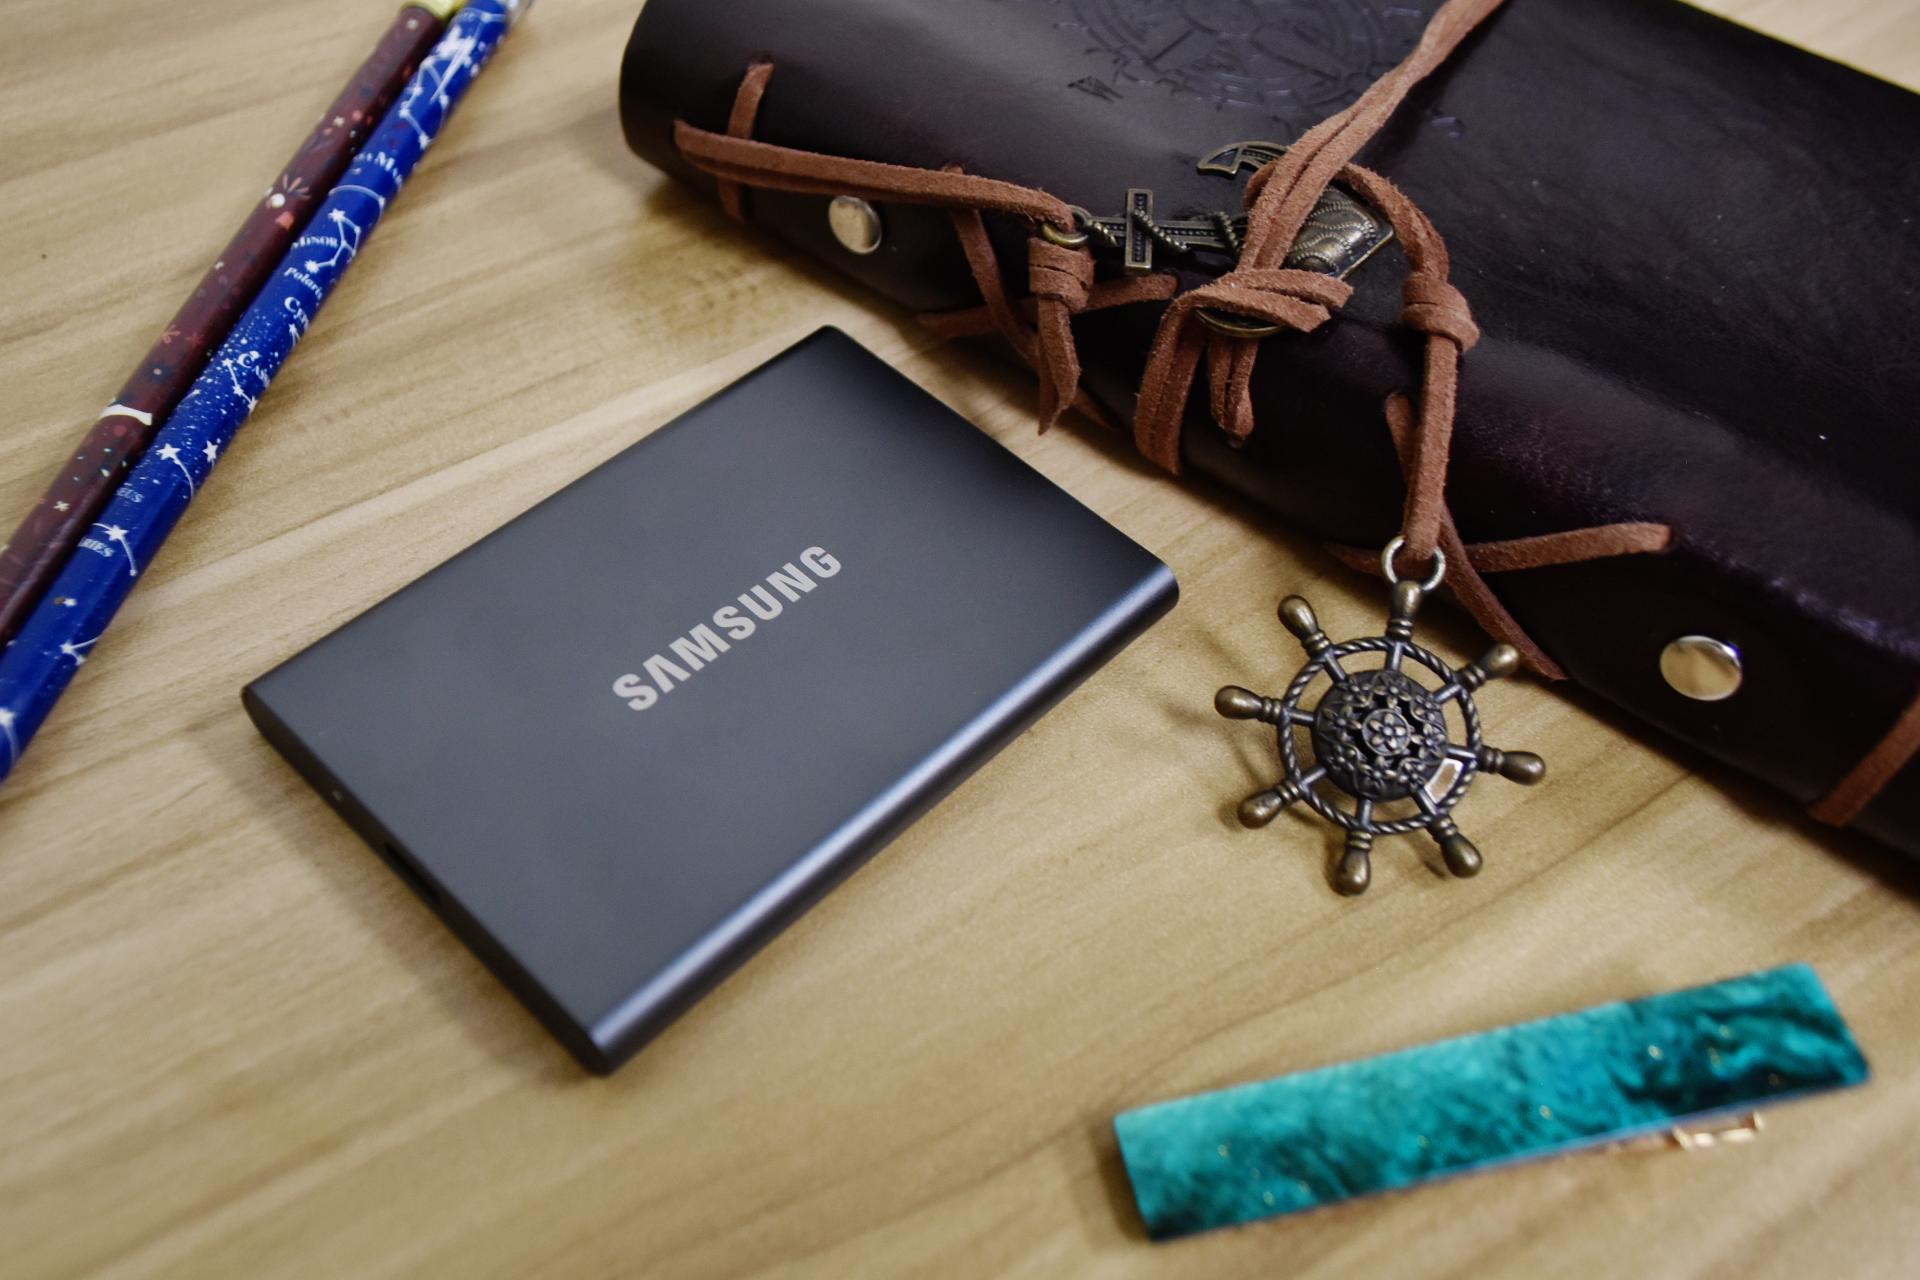 Samsung SSD T7 Testbericht –